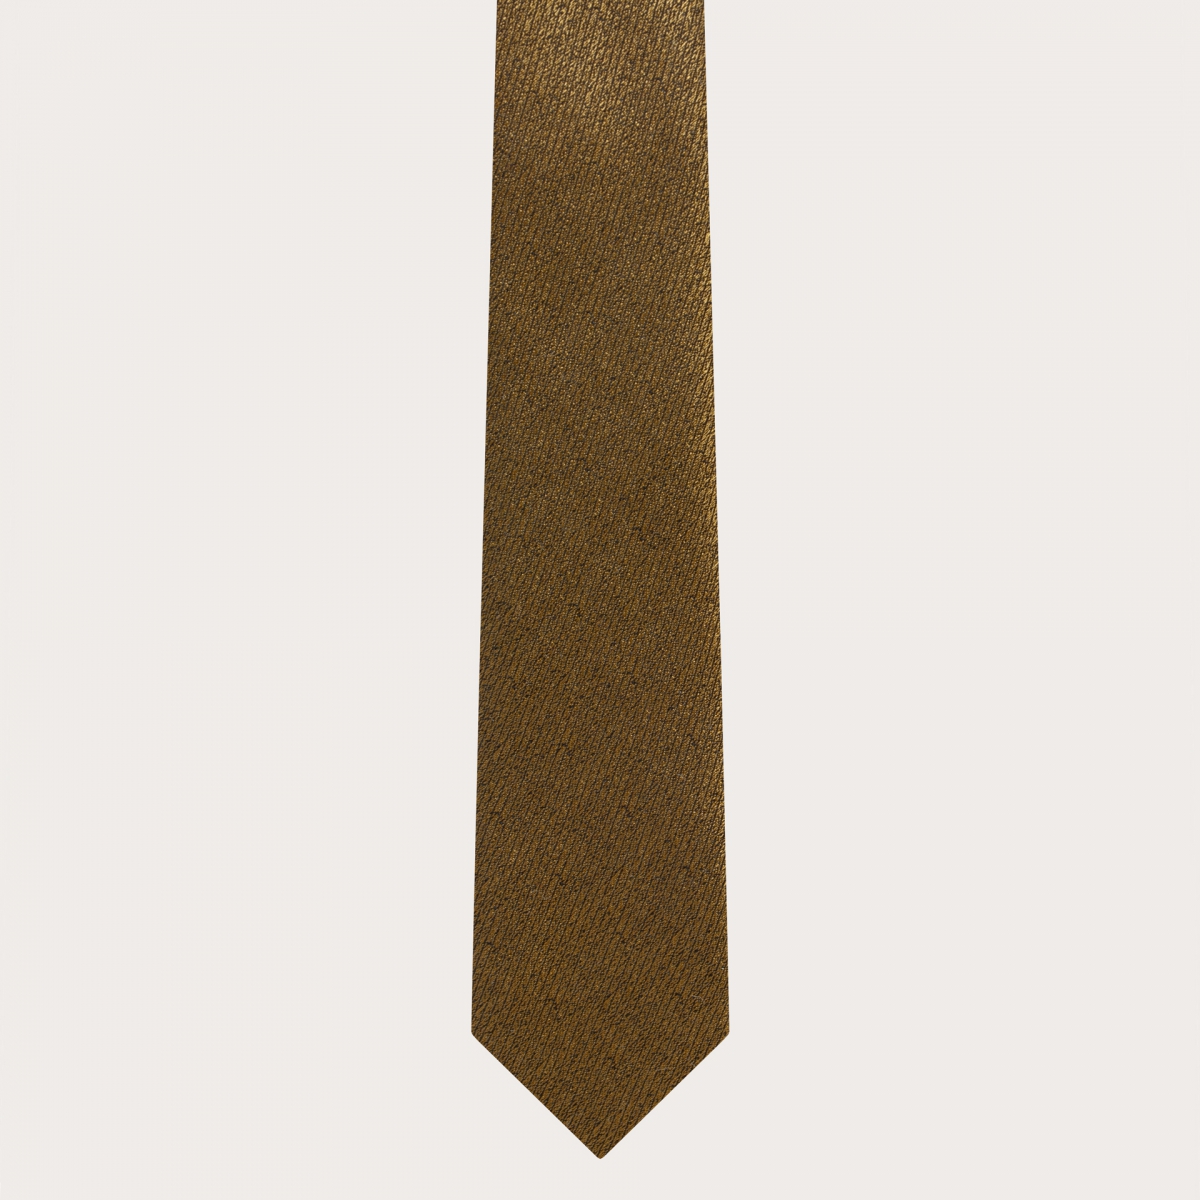 BRUCLE Elegantes Set aus Seiden-Hosenträgern und Krawatte in schillerndem Gold-Jacquard